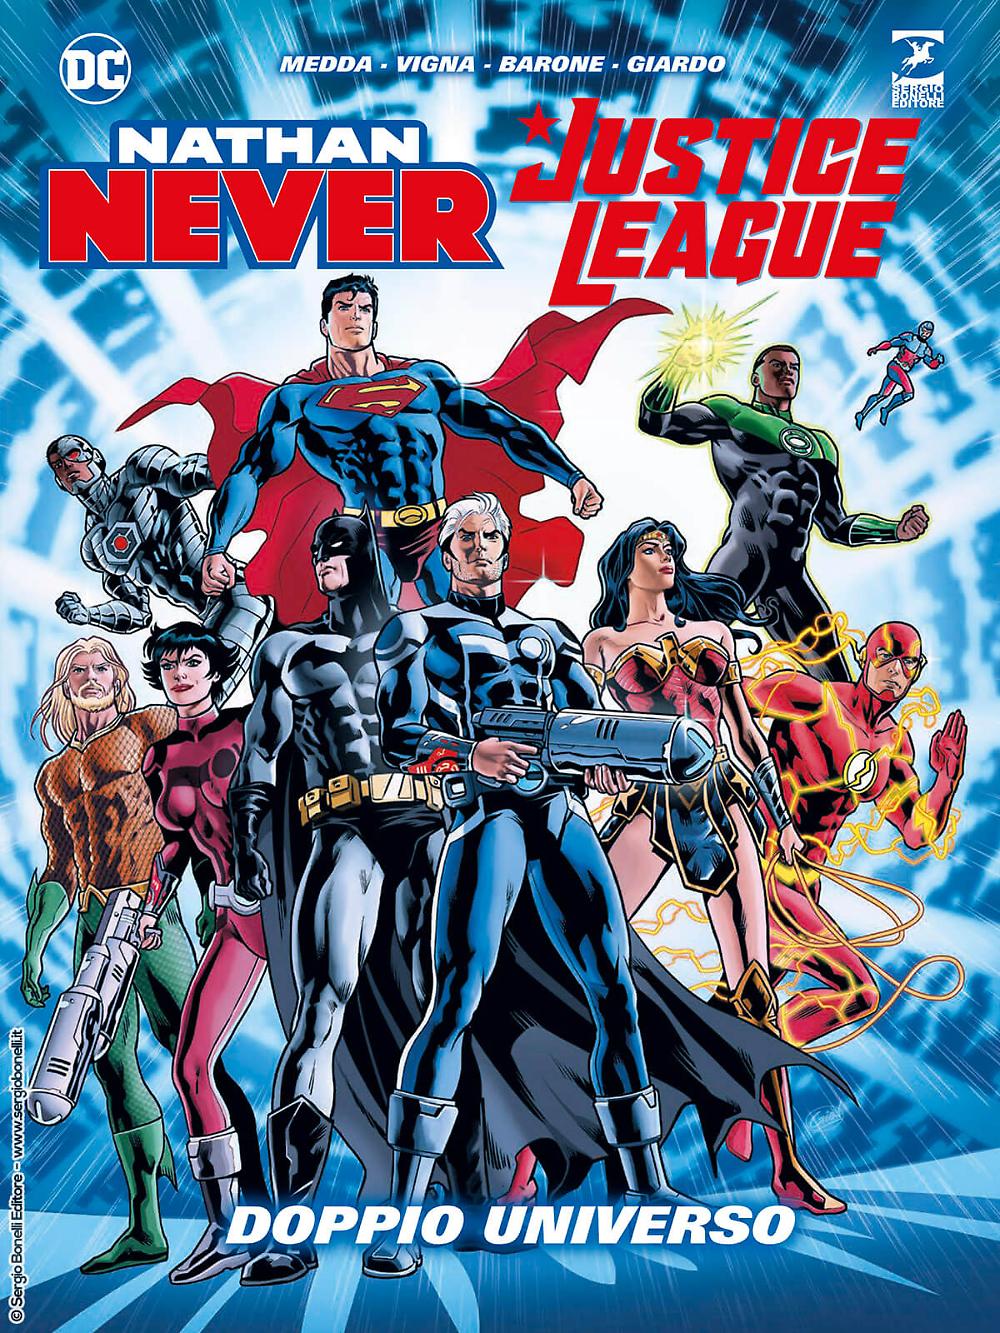 nathan never justice league doppio universo